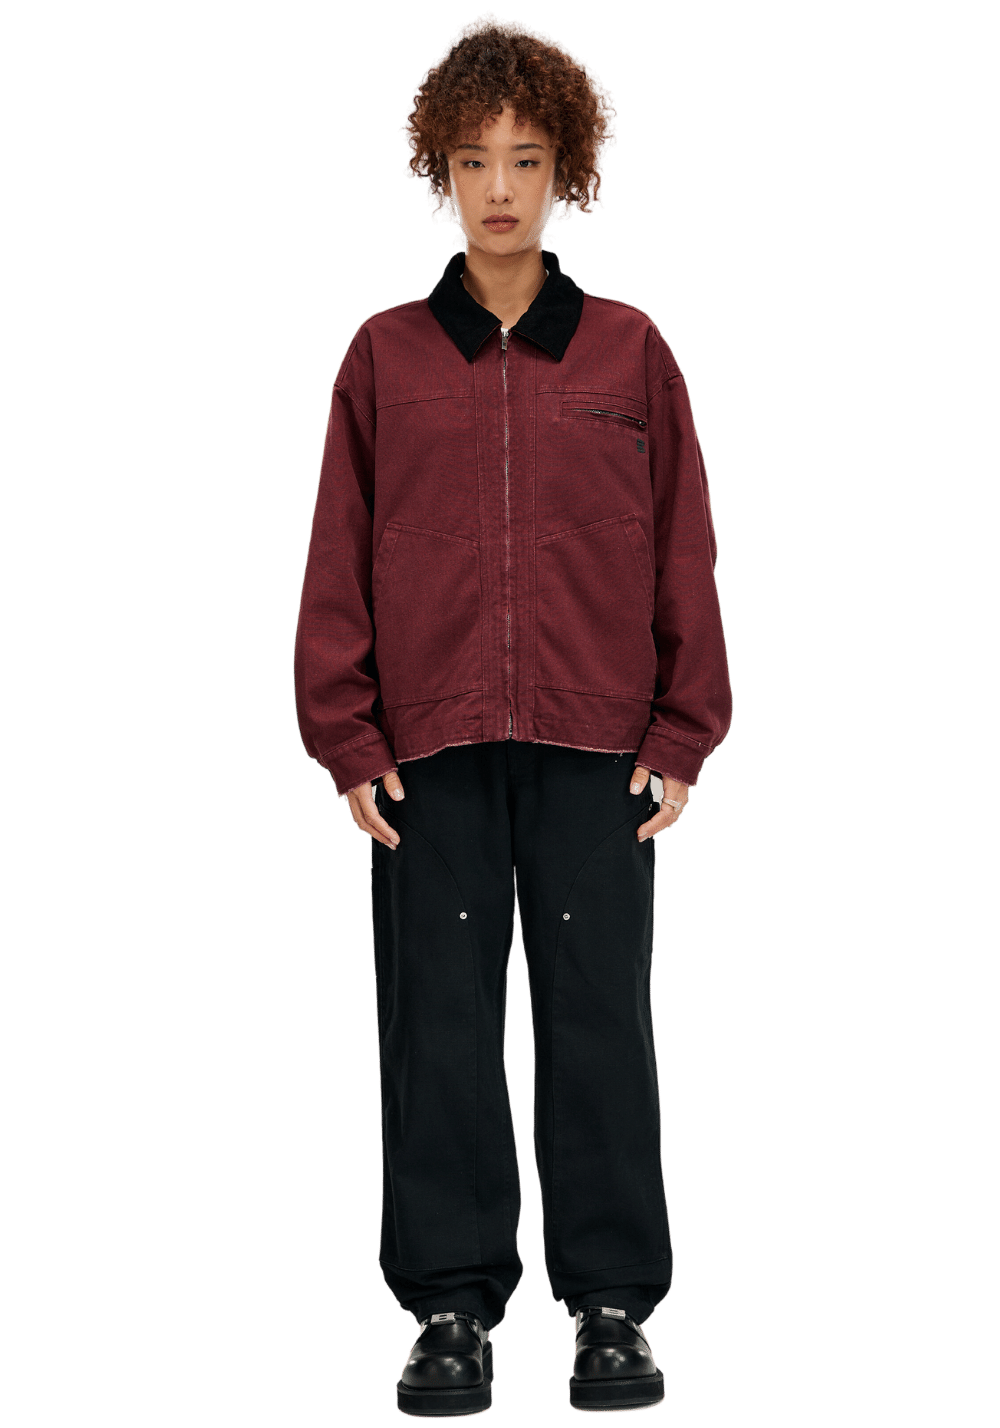 Detroit Workwear Jacket - PSYLOS 1, Detroit Workwear Jacket, Jacket, Boneless, PSYLOS 1